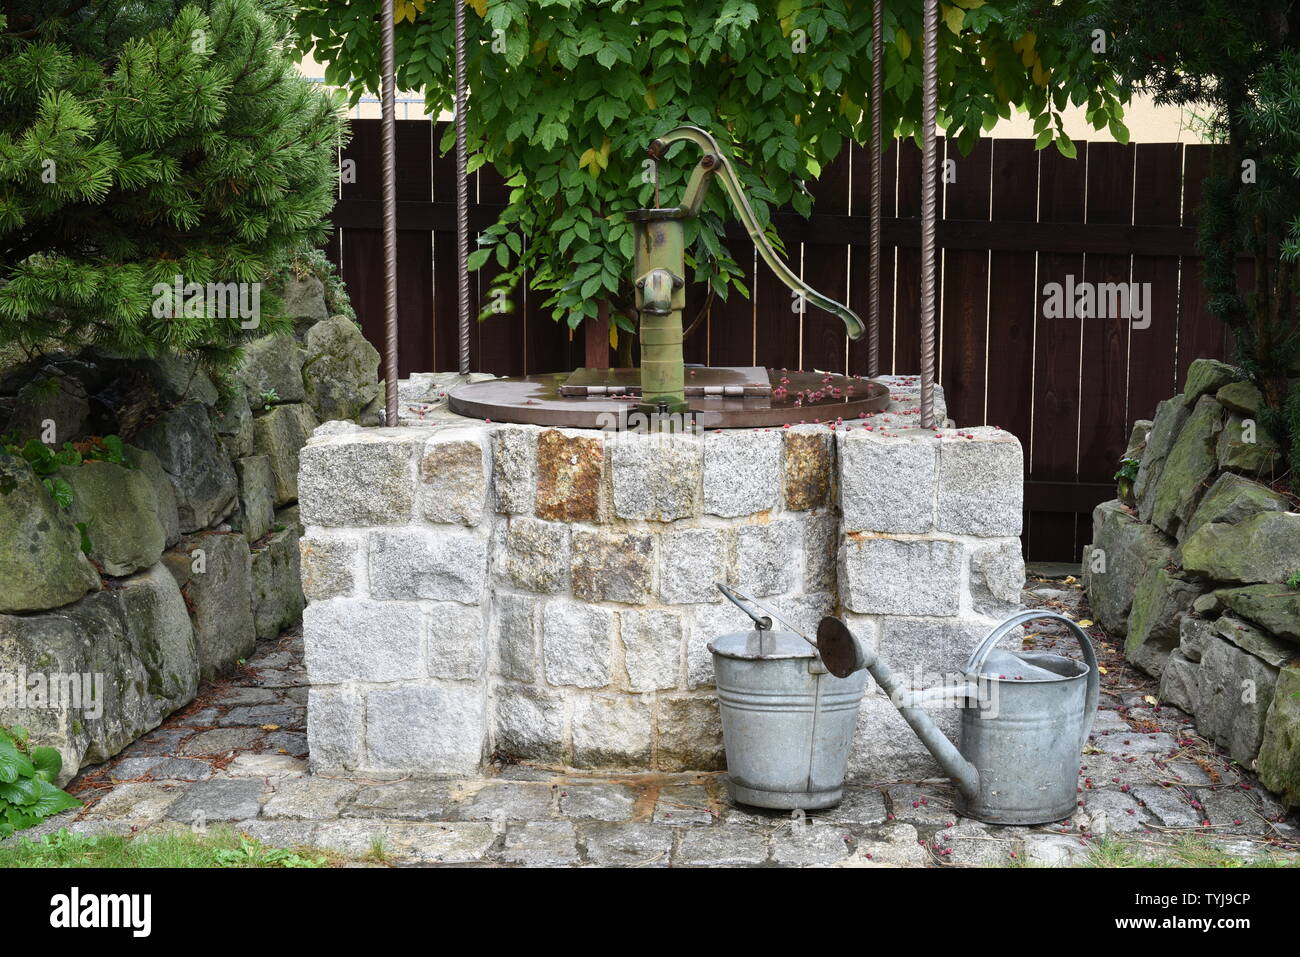 Kleine Wasserpumpe Für Den Trinkwasserbrunnen Stockbild - Bild von